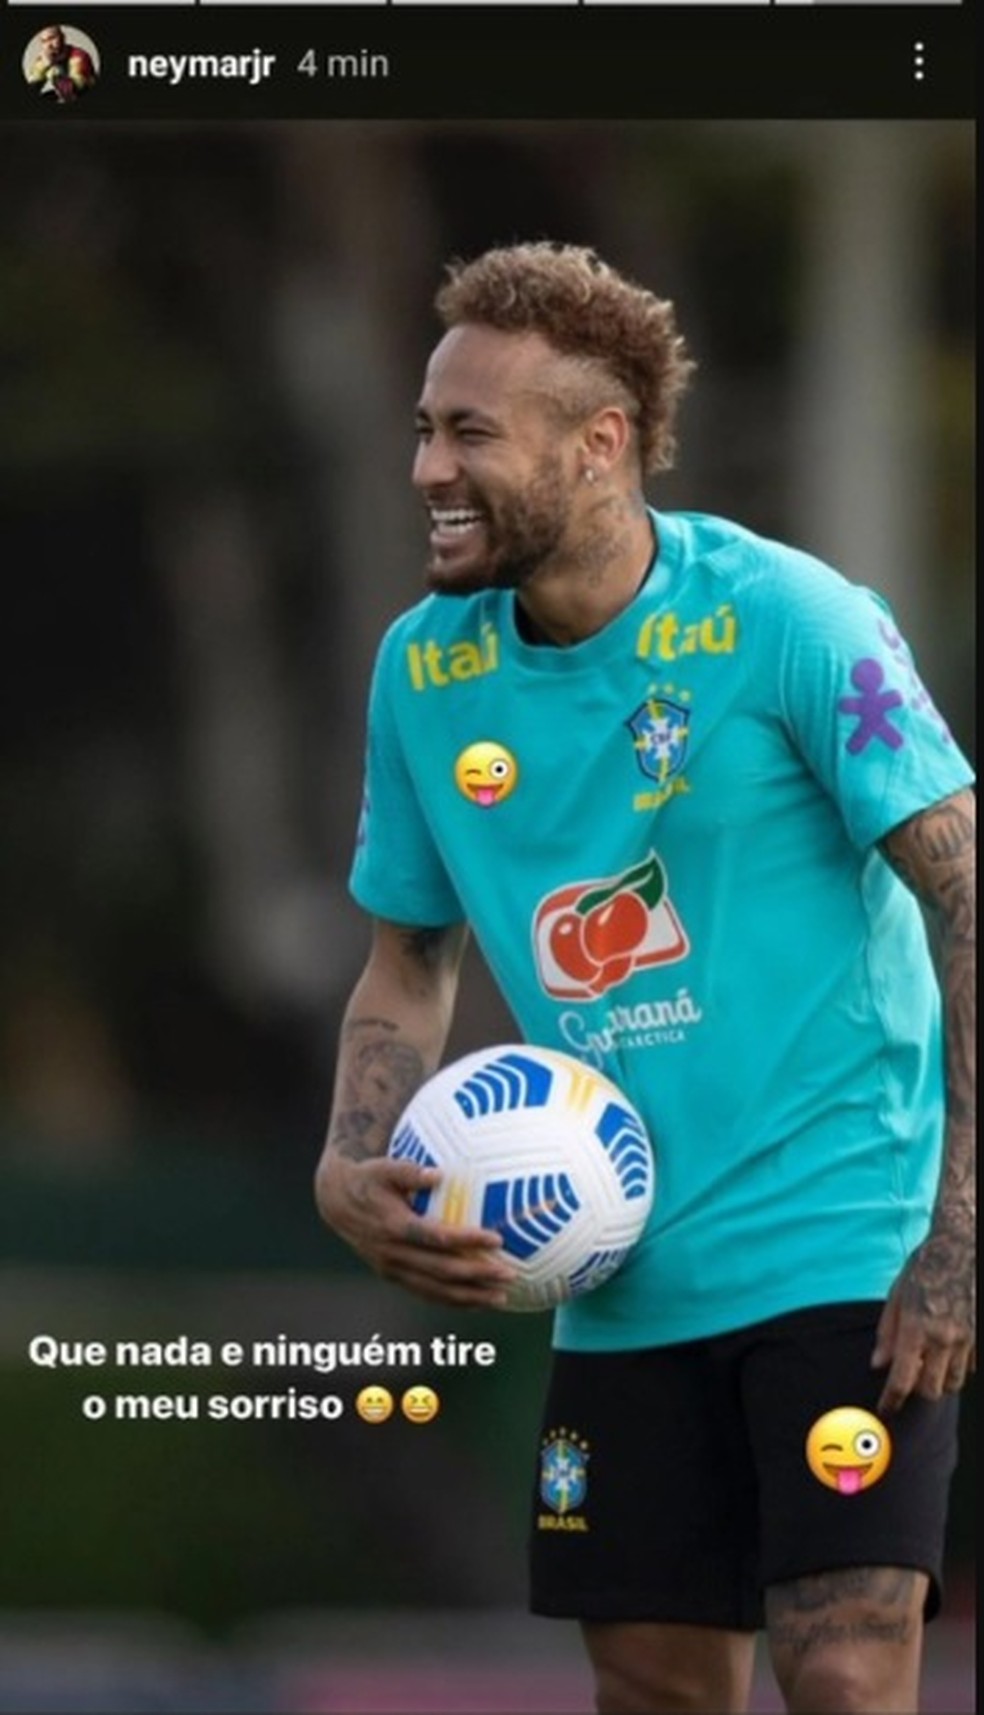 Postagem de Neymar em rede social cobrindo o símbolo da Nike — Foto: Reprodução